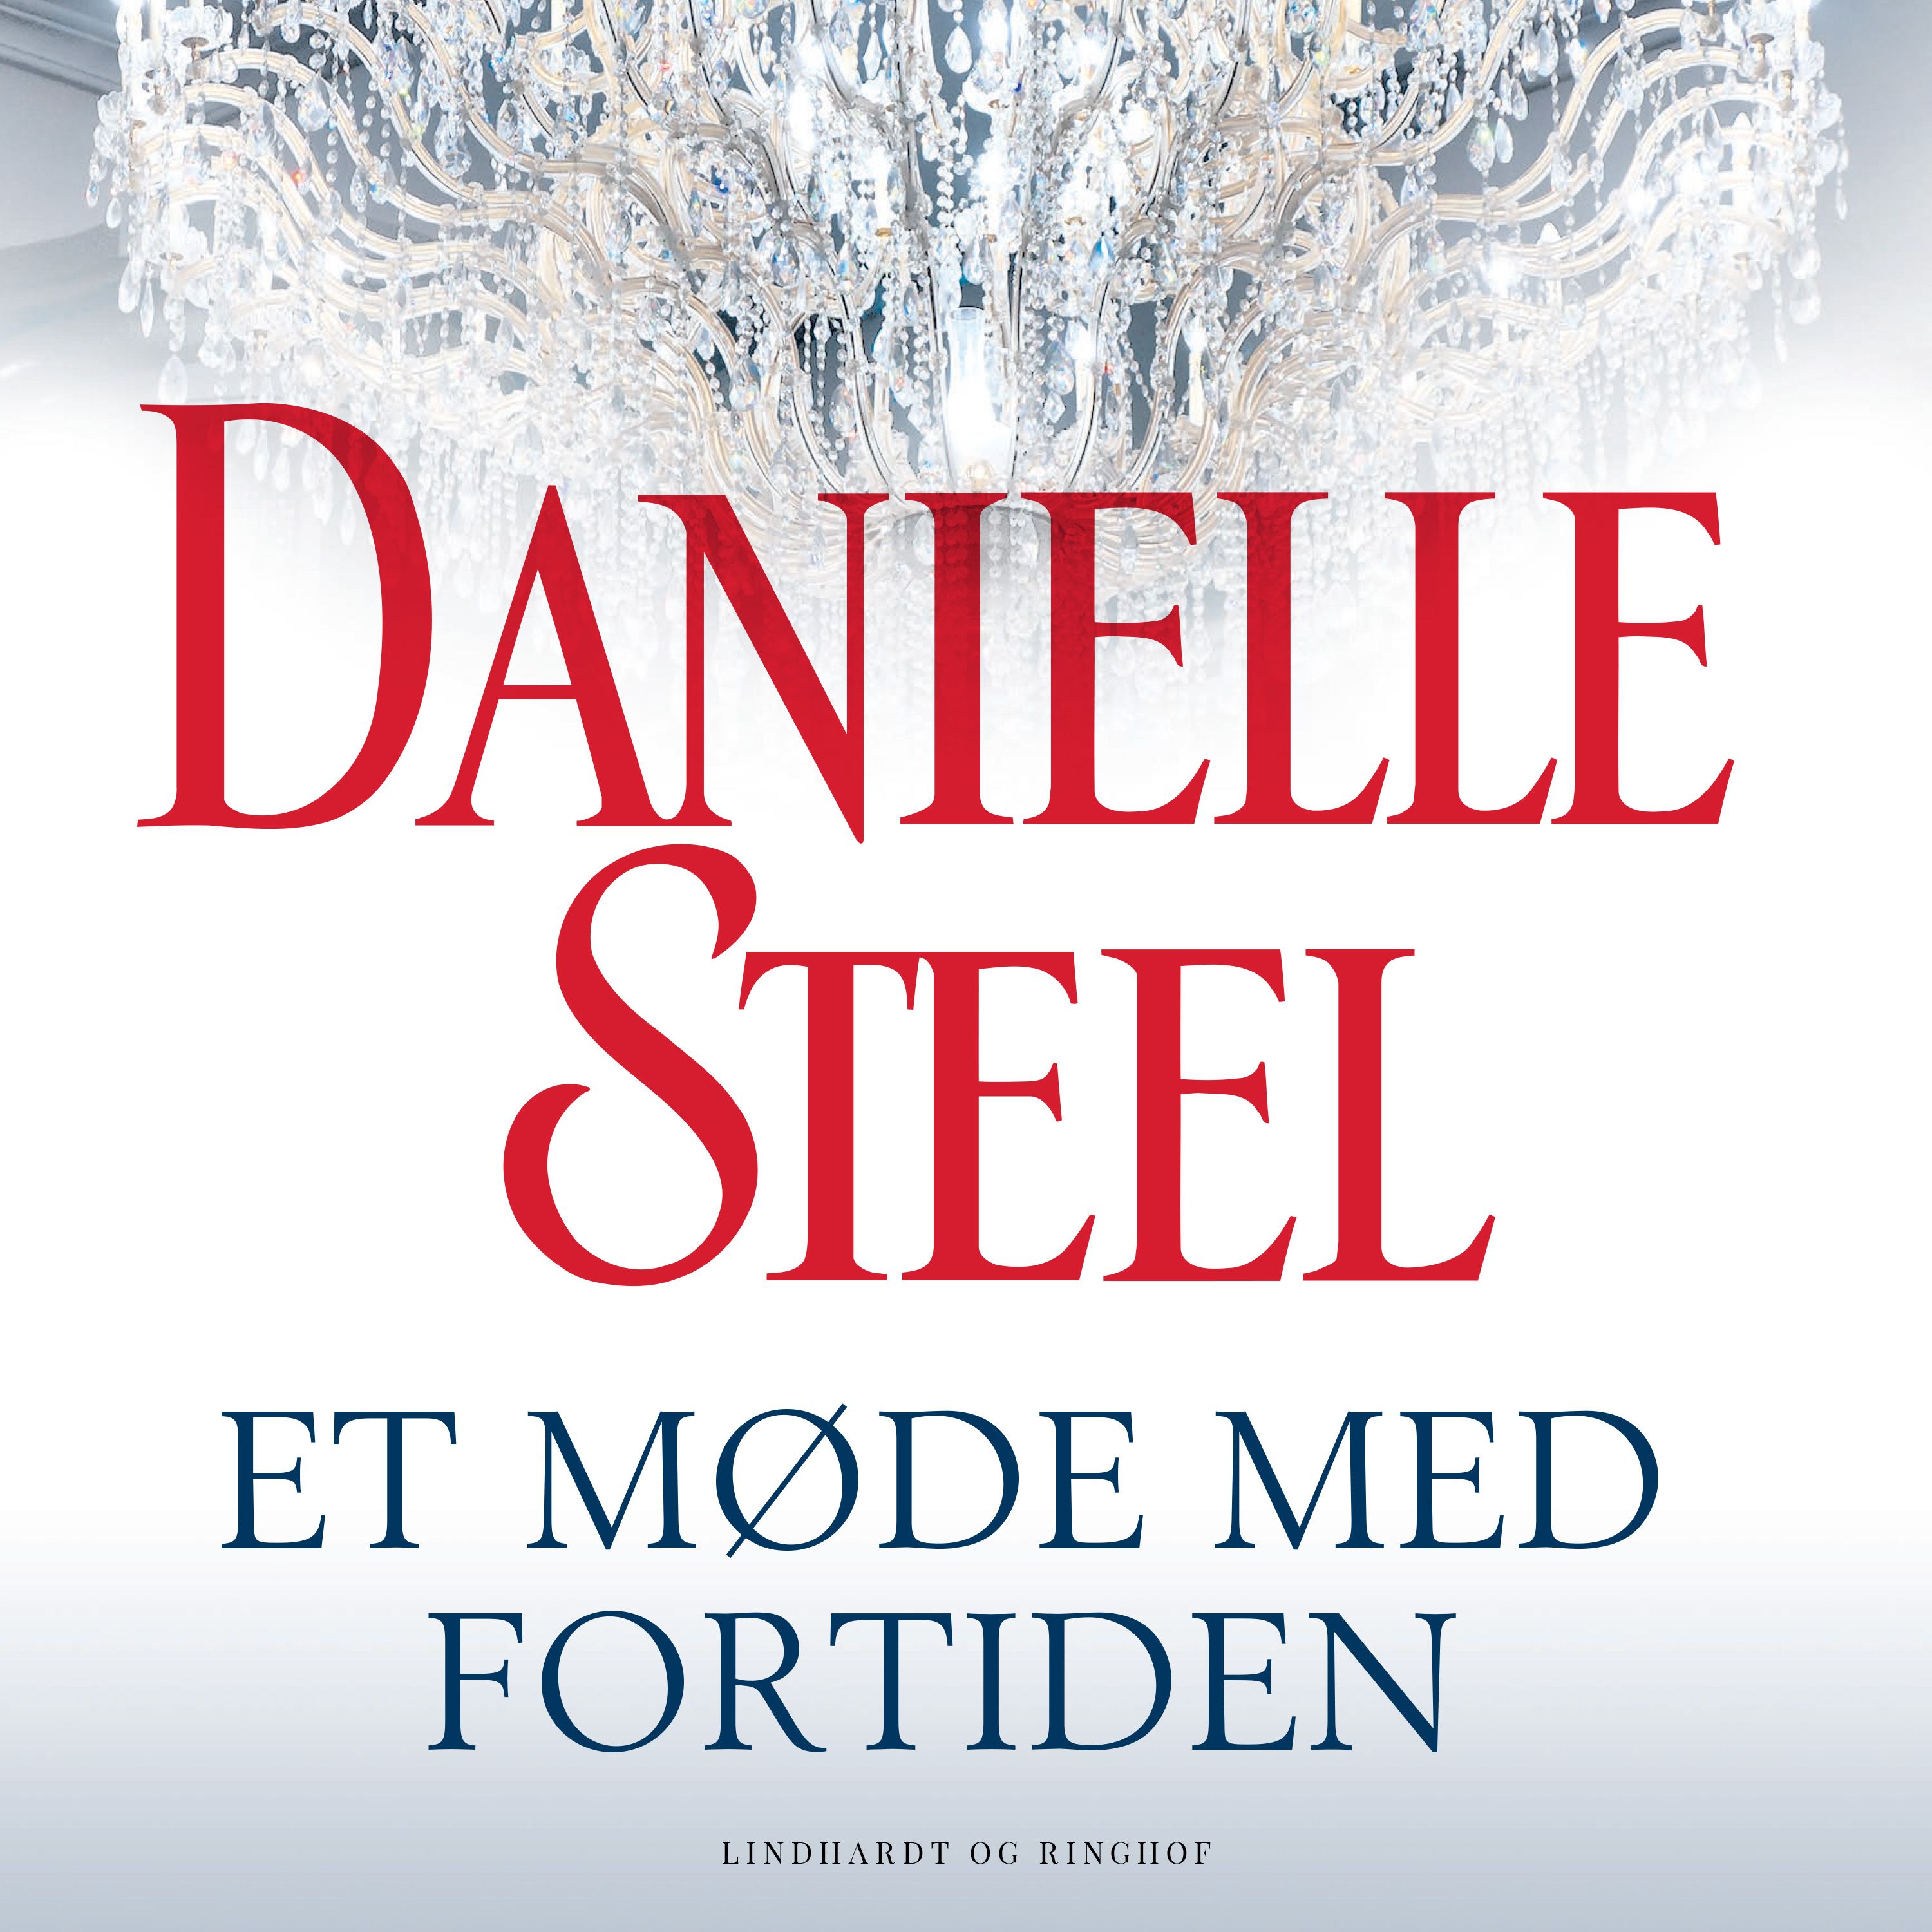 Et møde med fortiden, audiobook by Danielle Steel